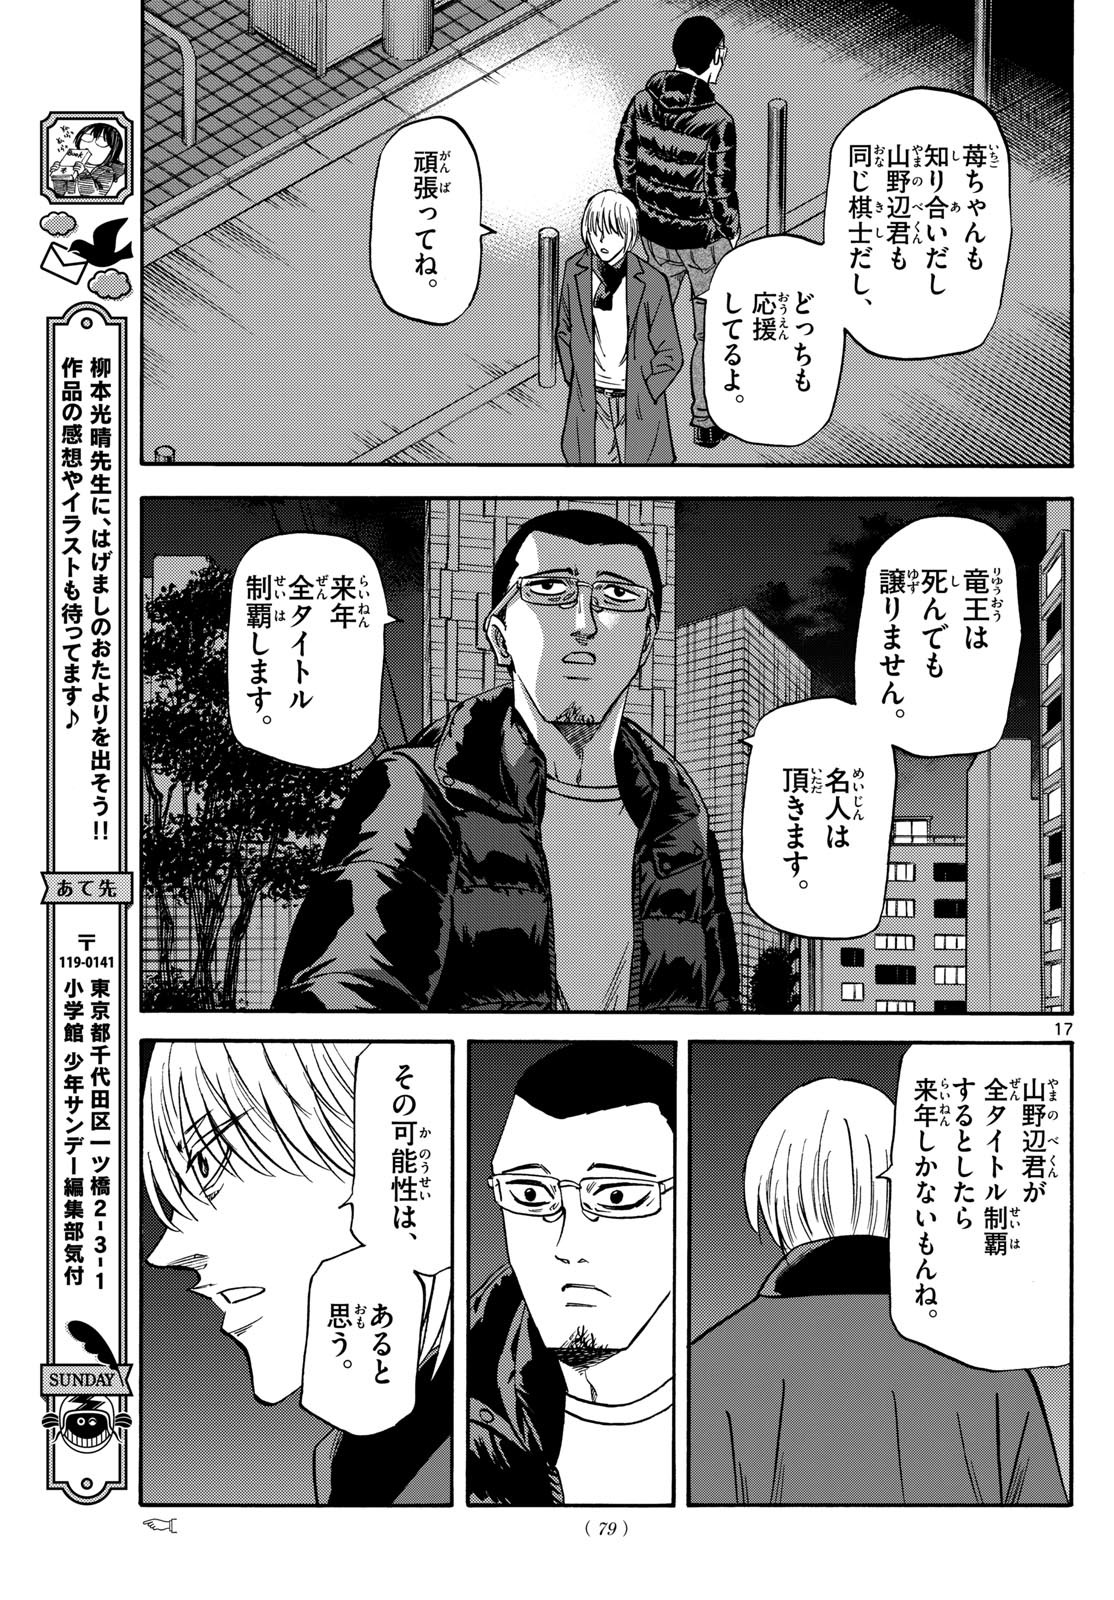 Ryu-to-Ichigo - Chapter 171 - Page 17